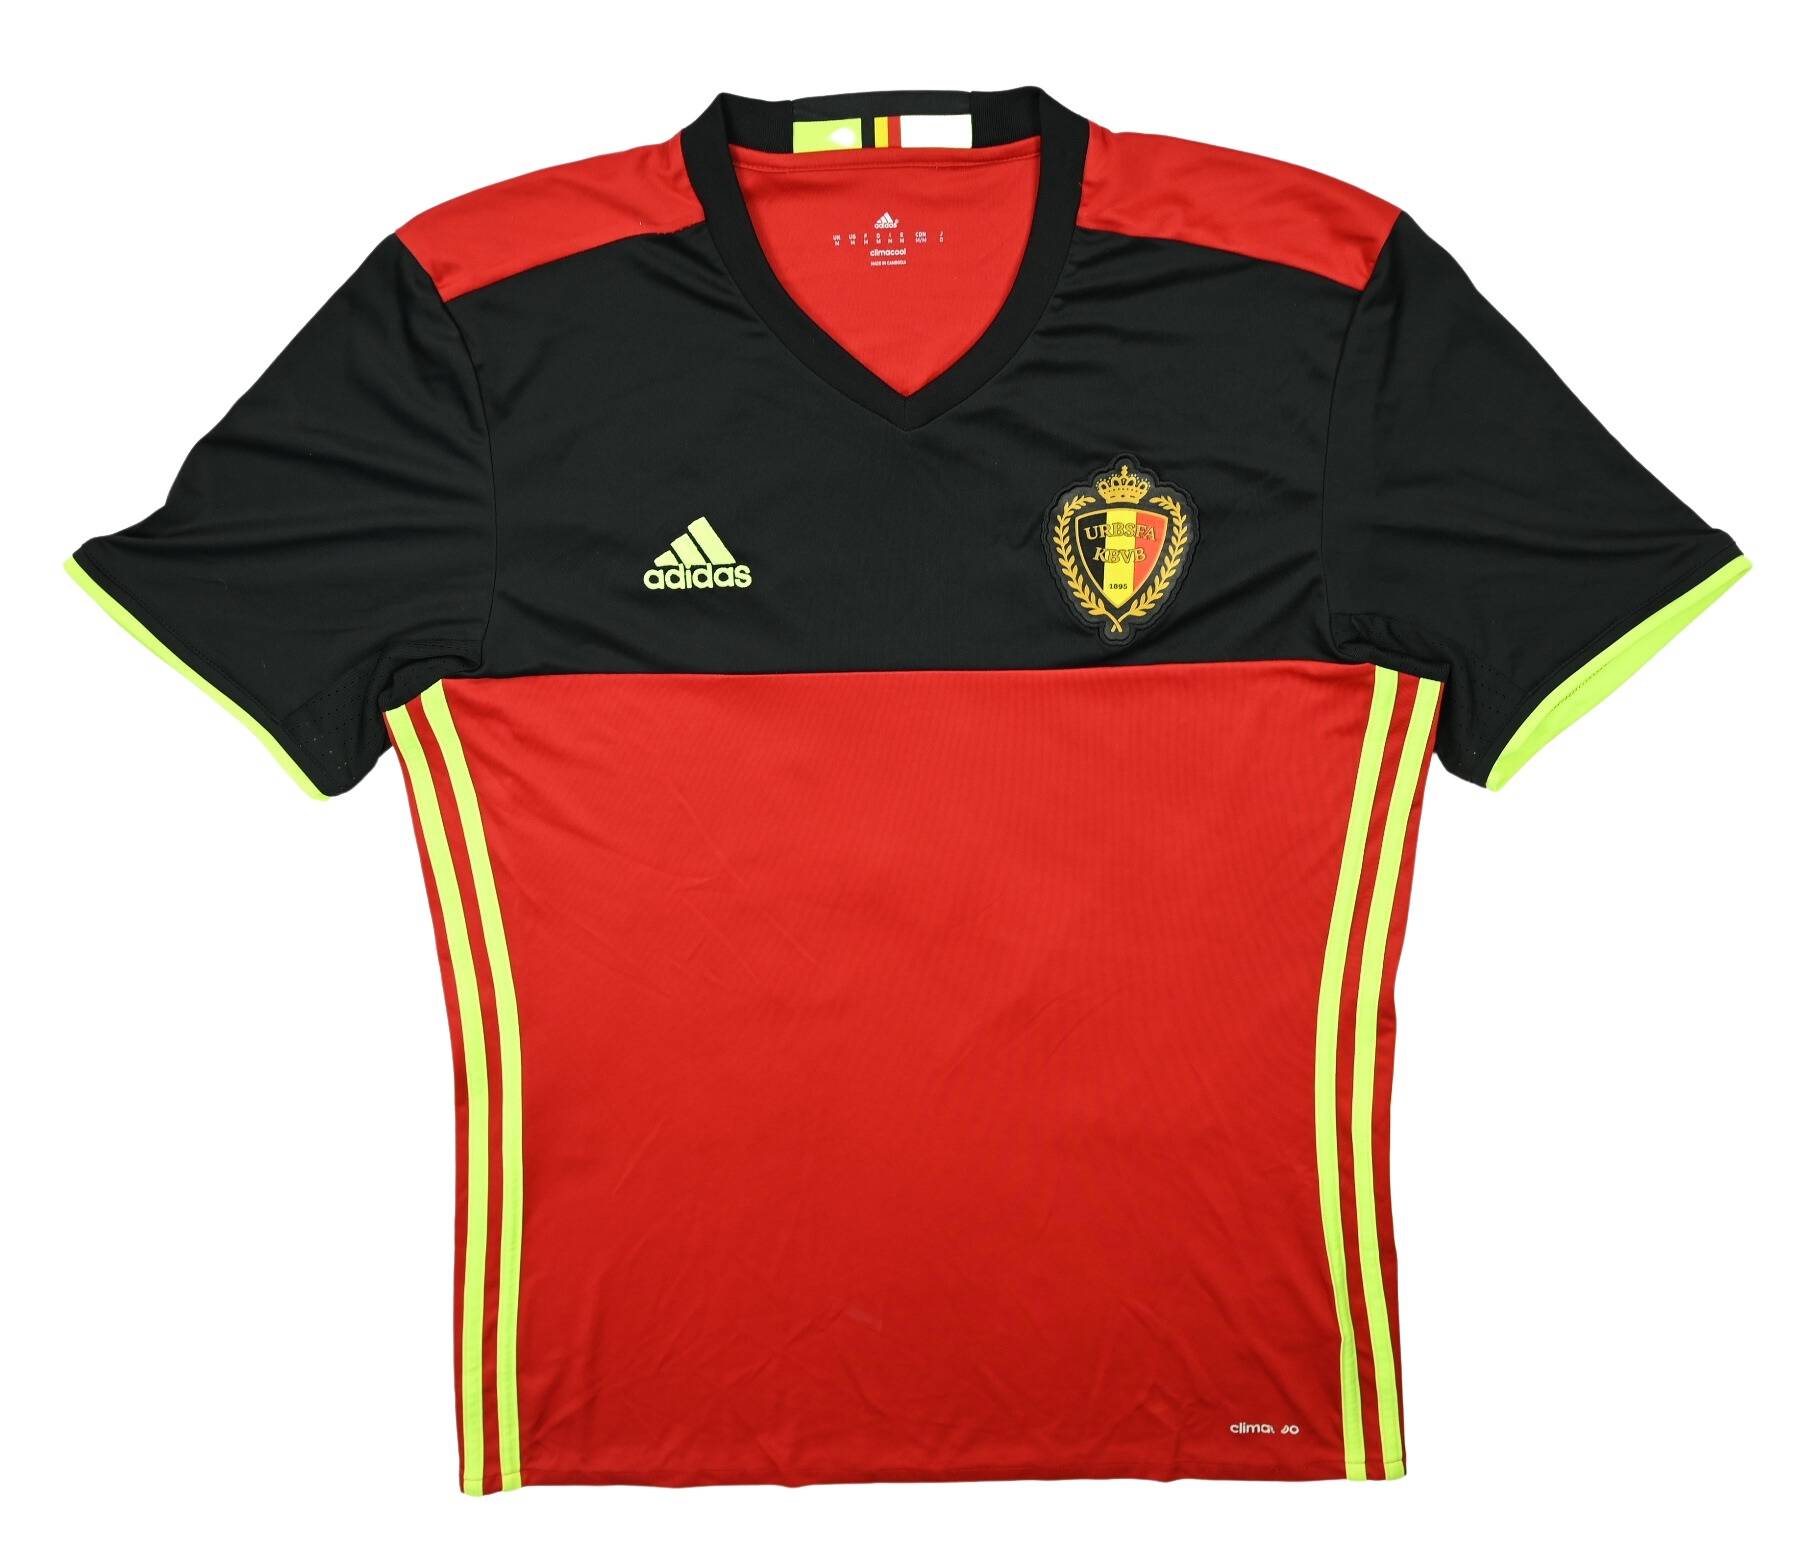 Dries Mertens' vintage Belgium jersey